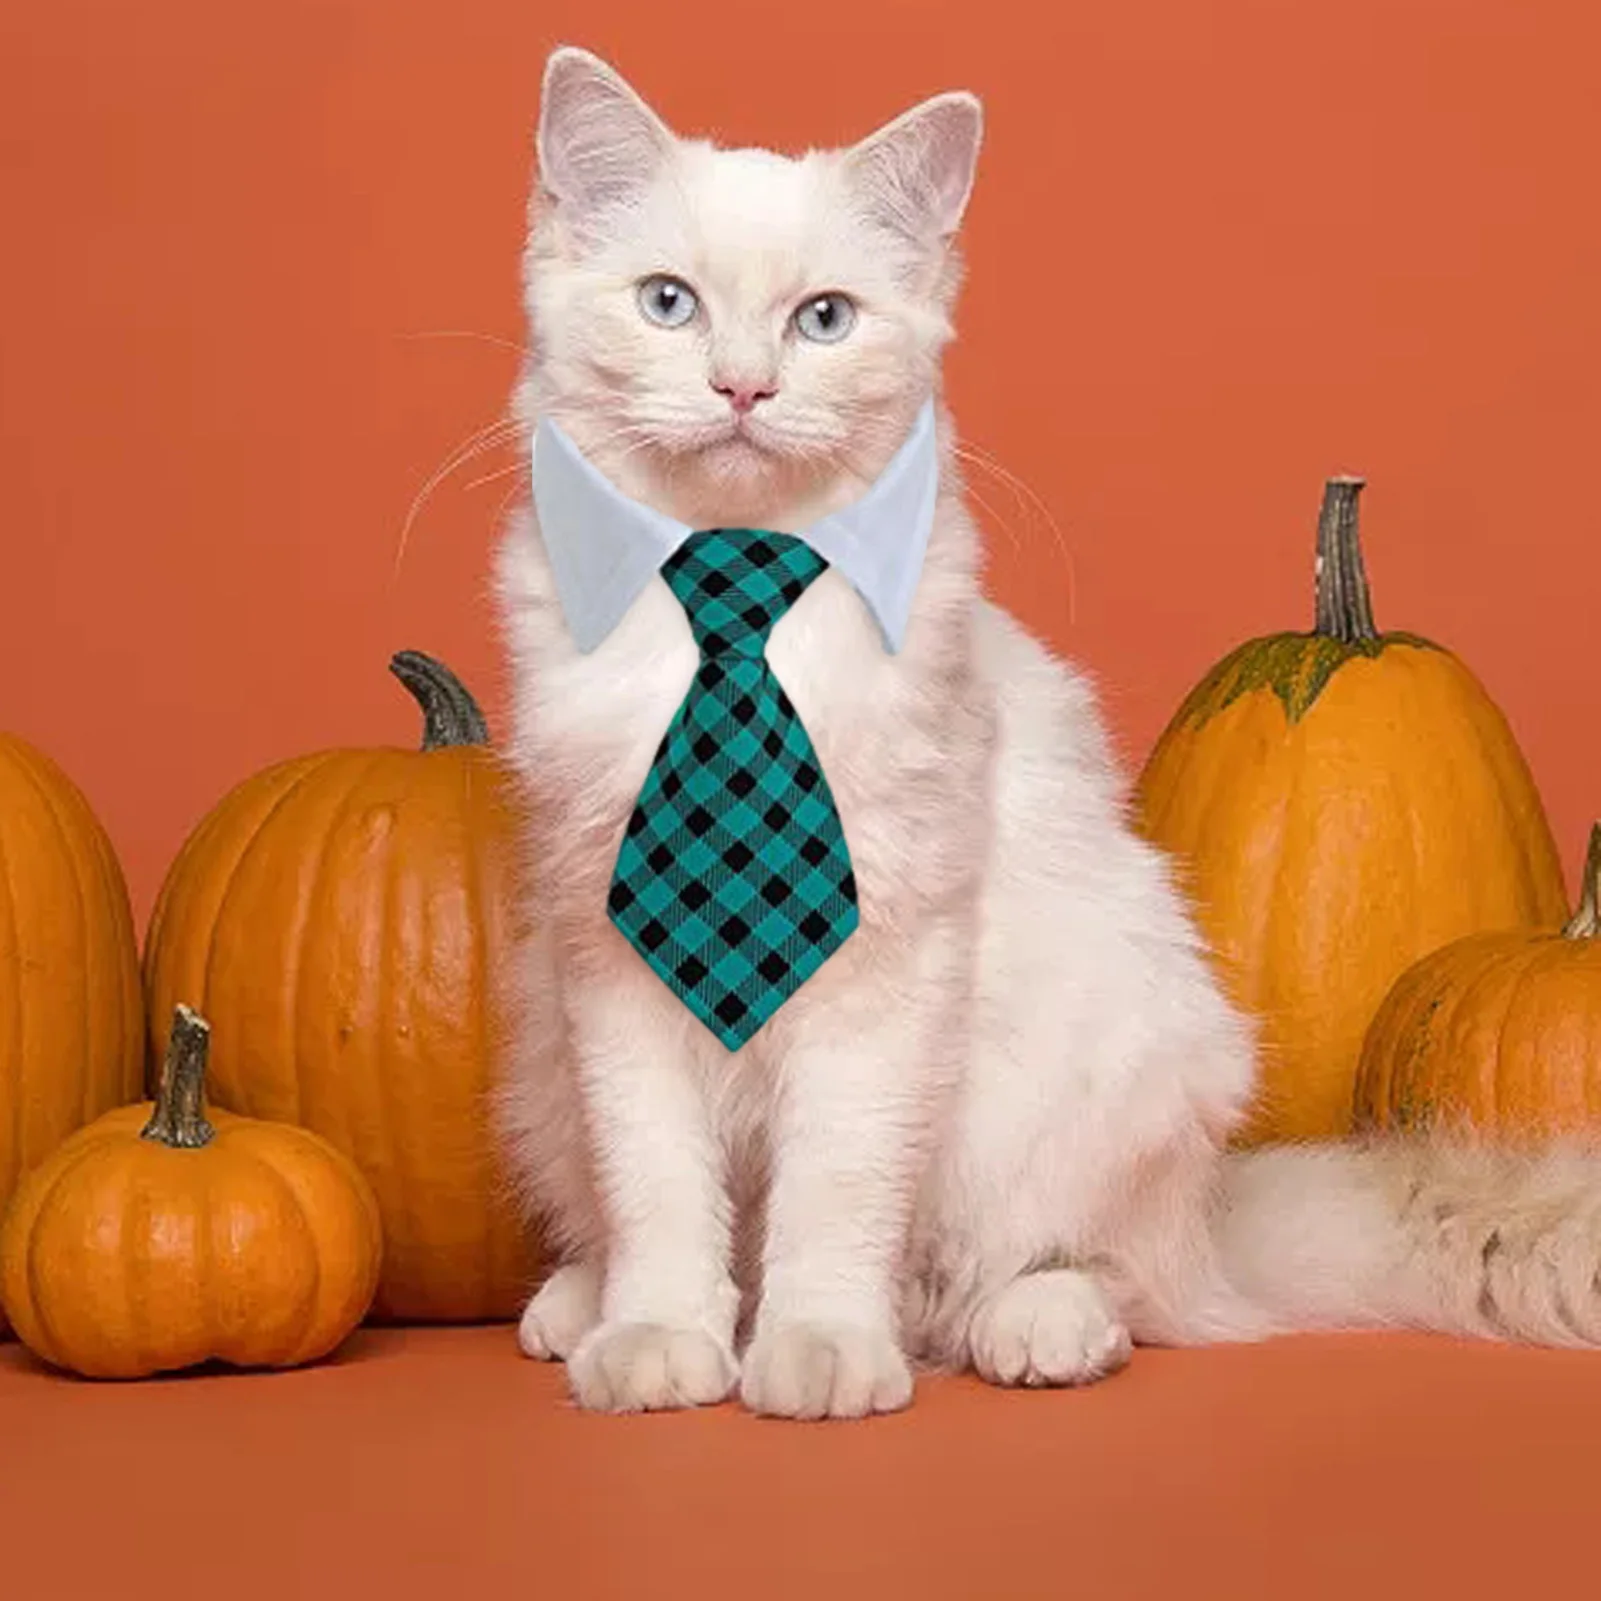 Tanie 1pc muszka dla psa szczeniak kotek krawat w paski gwiazda kołnierz Handmade kot produkt sklep